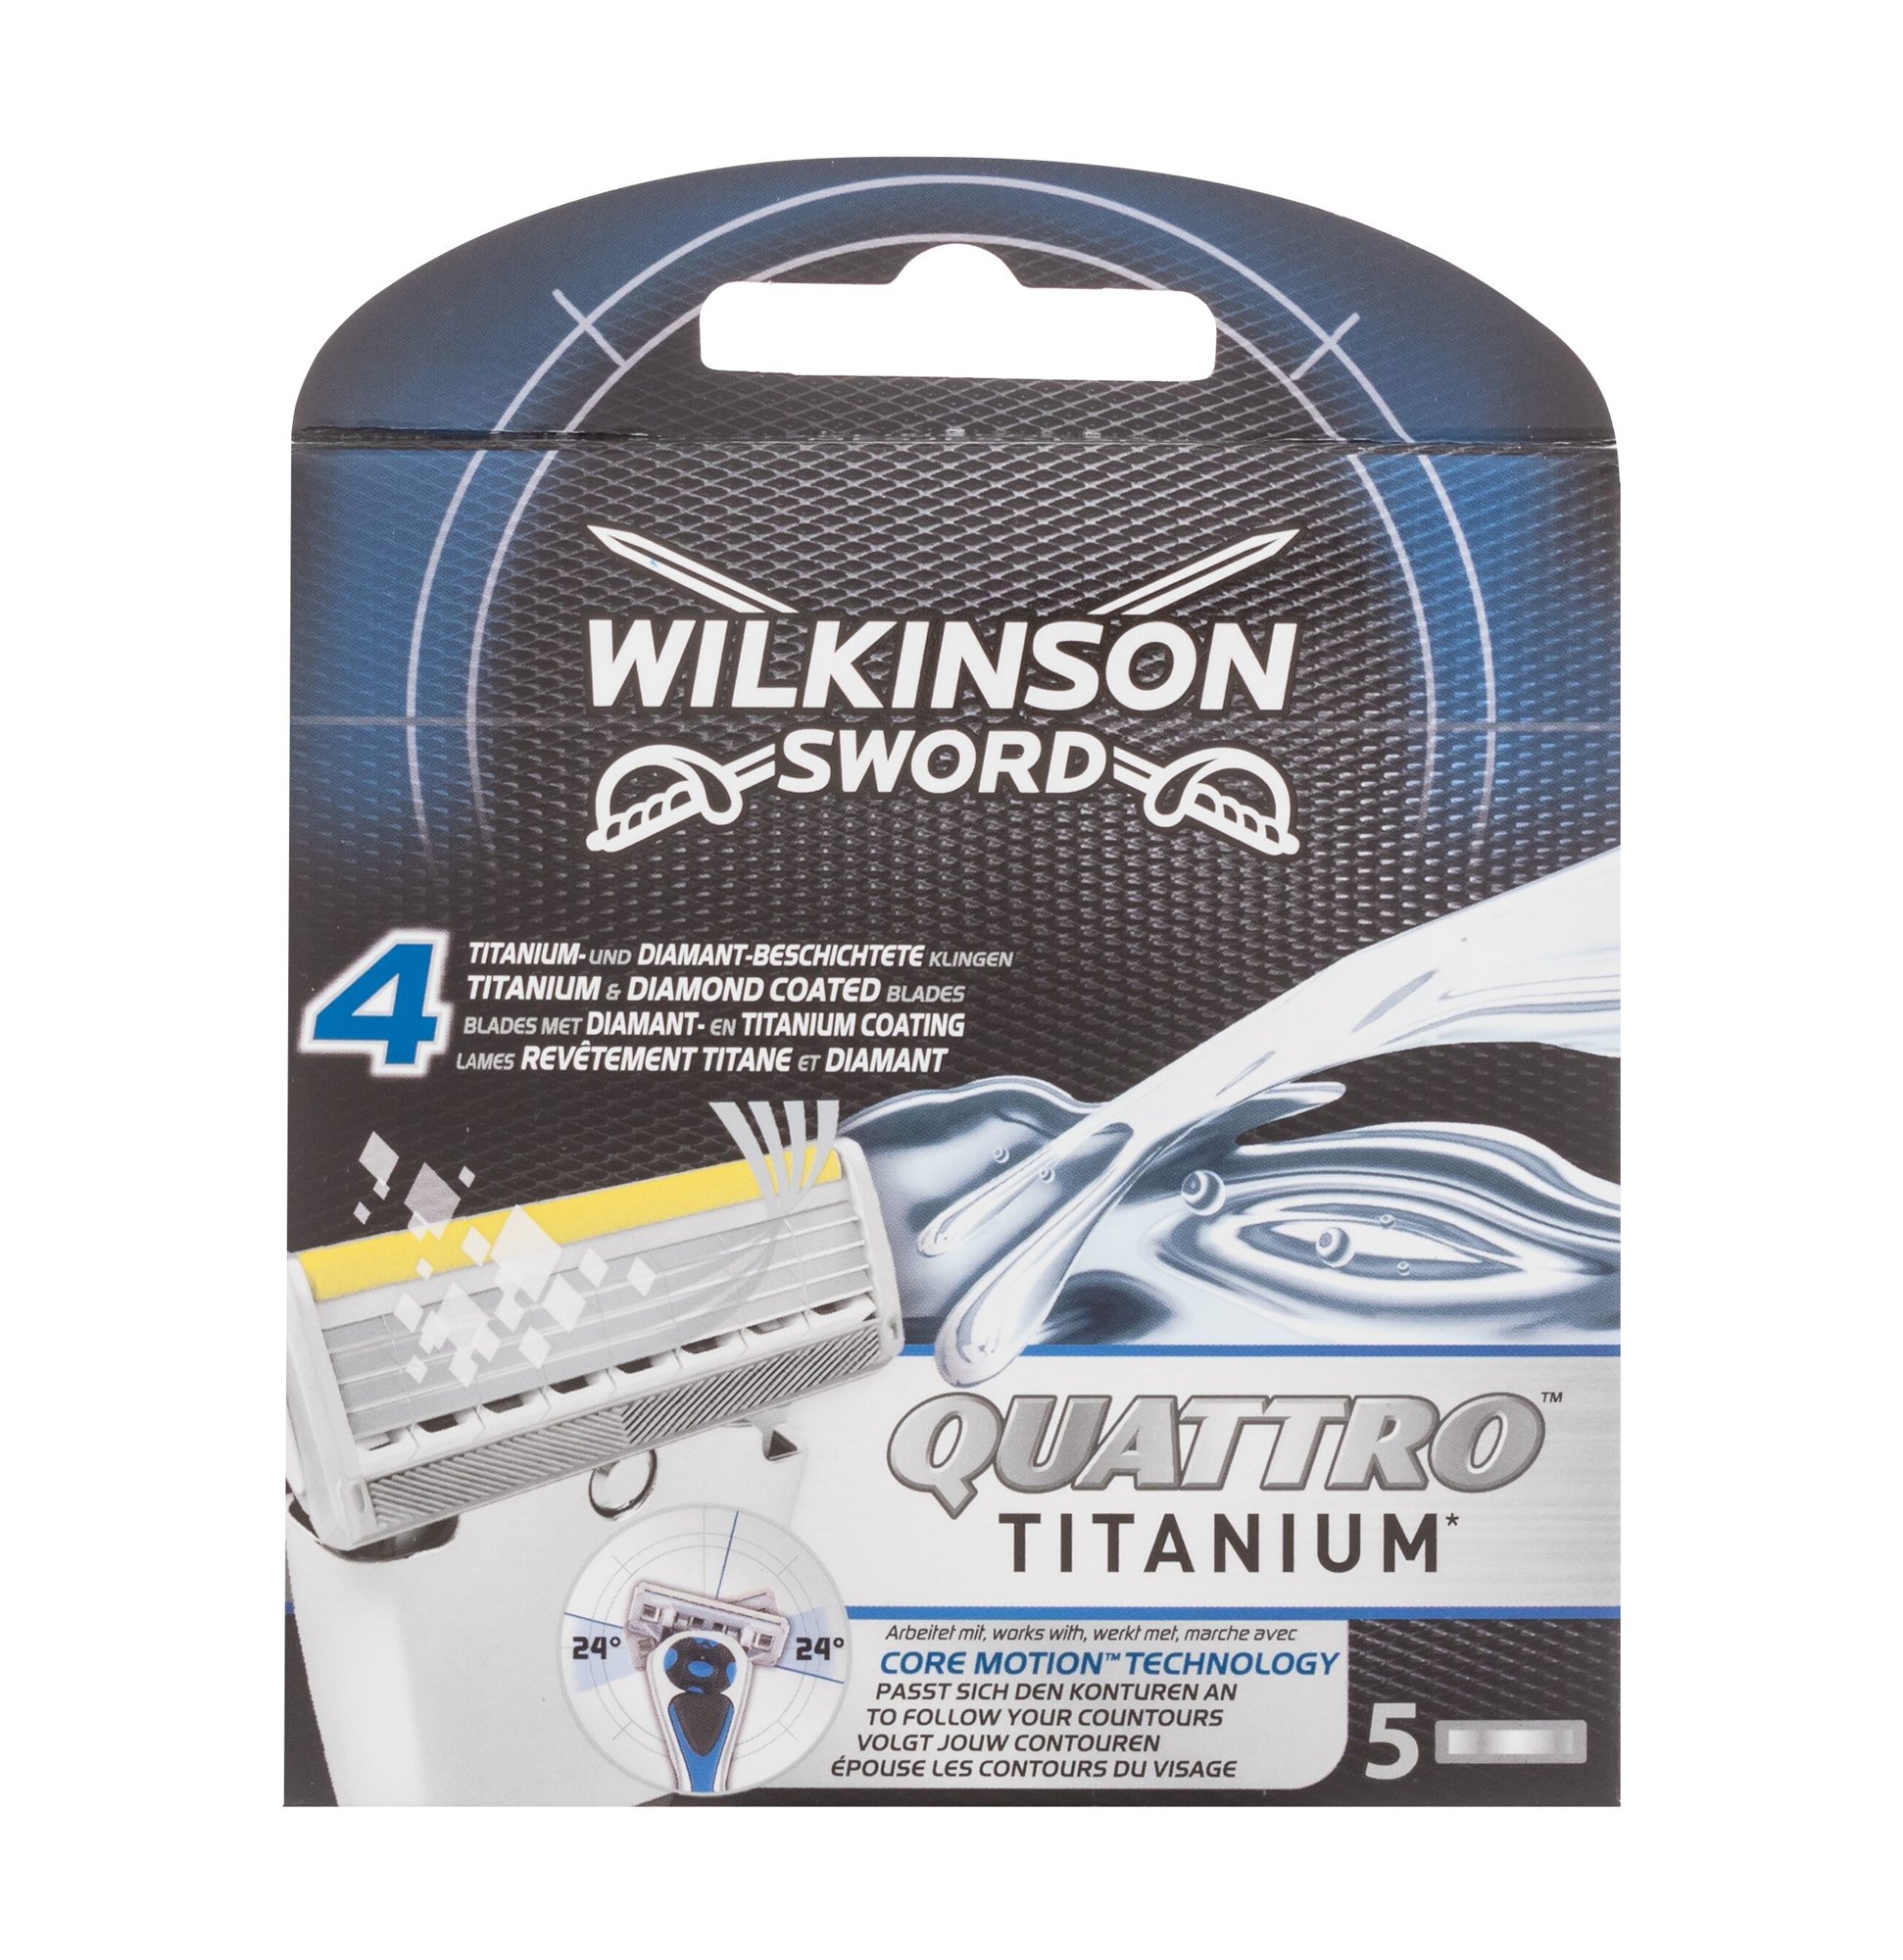 Wilkinson Sword Quattro Titanium skustuvo galvutė